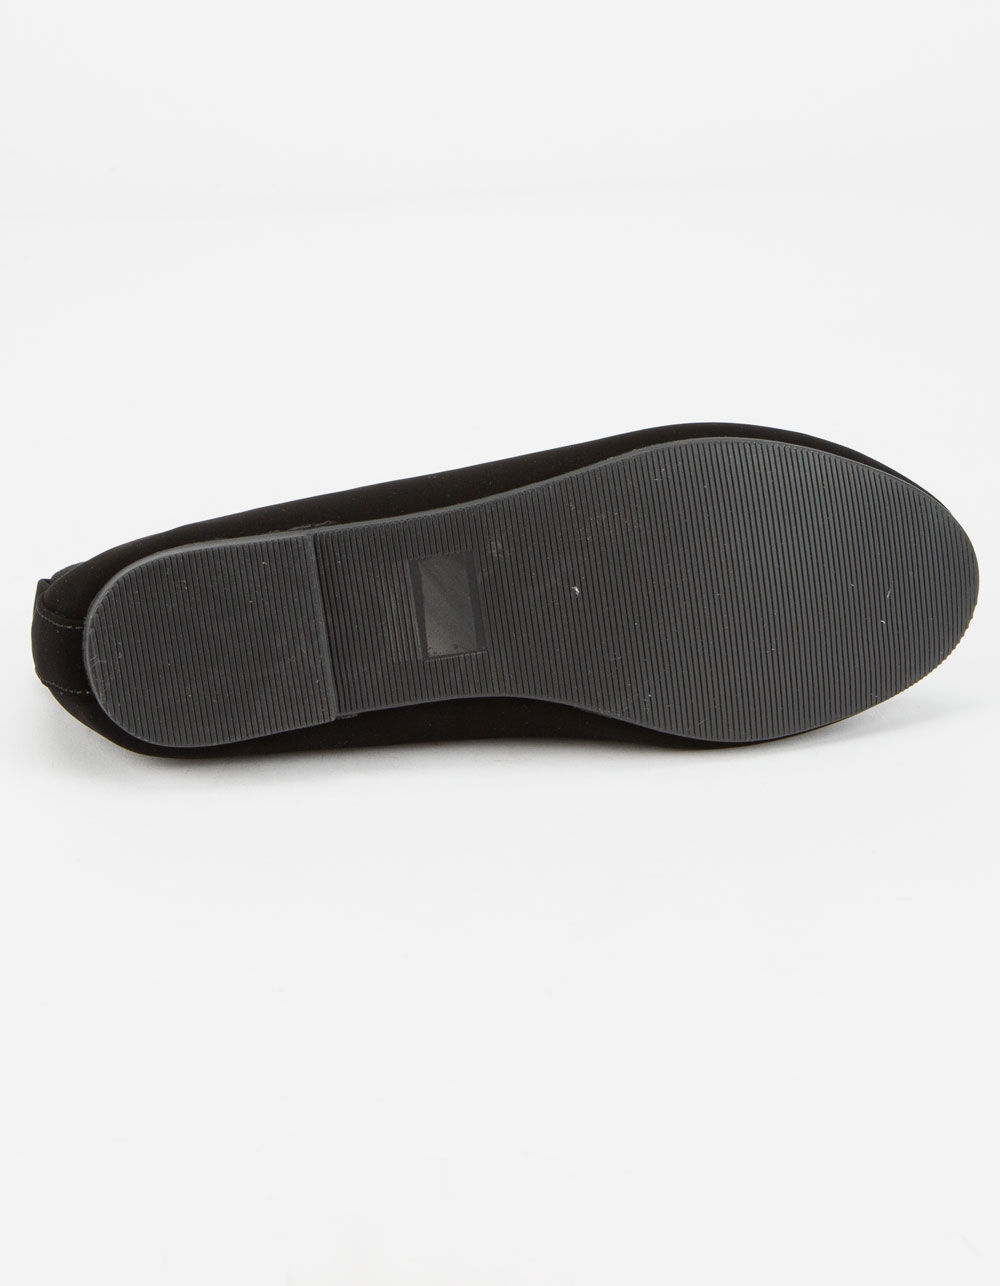 SODA Ankle Skimmer Girls Flats - BLACK | Tillys